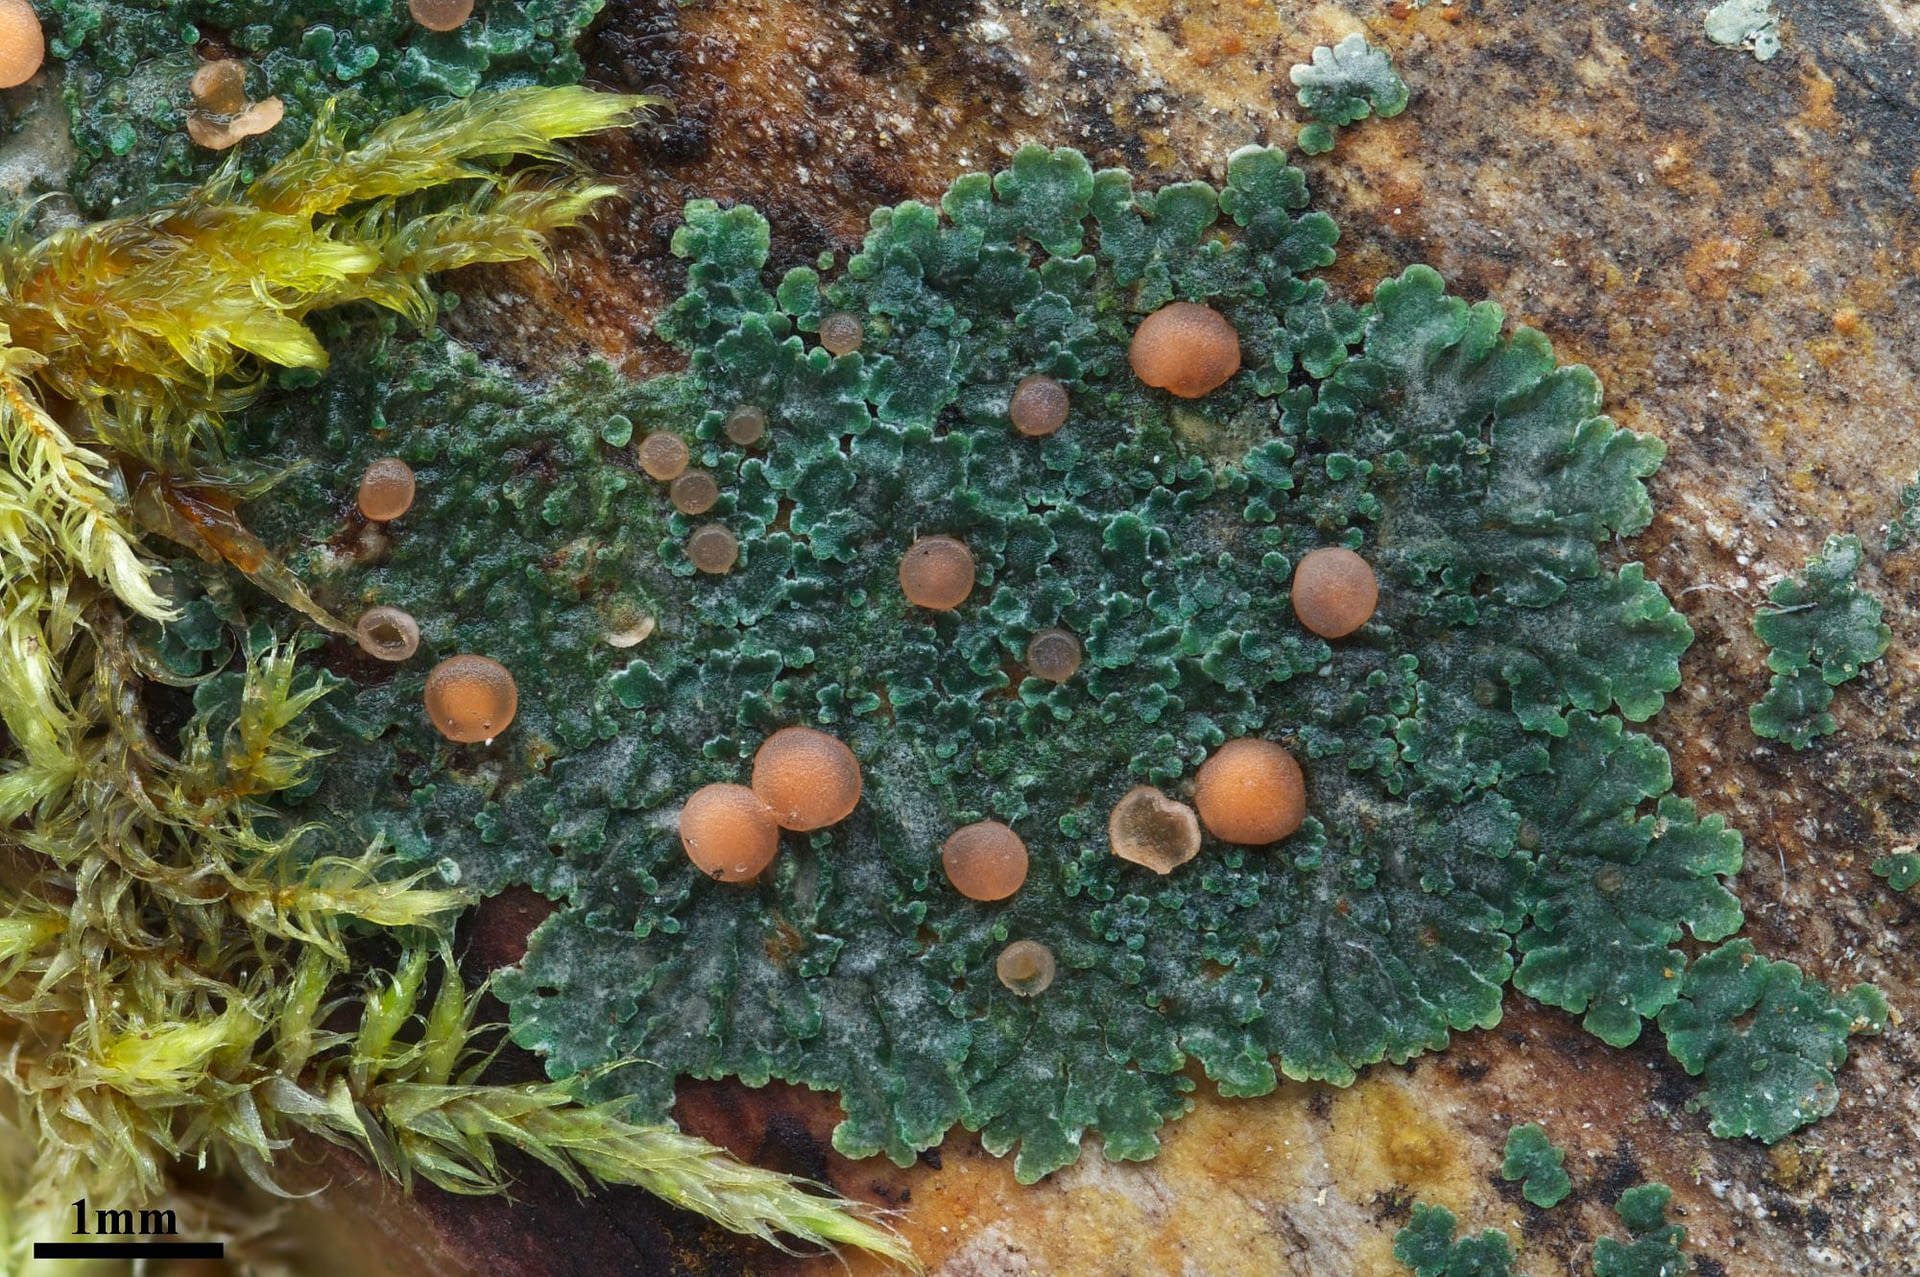 Image: green lichen with orange growths